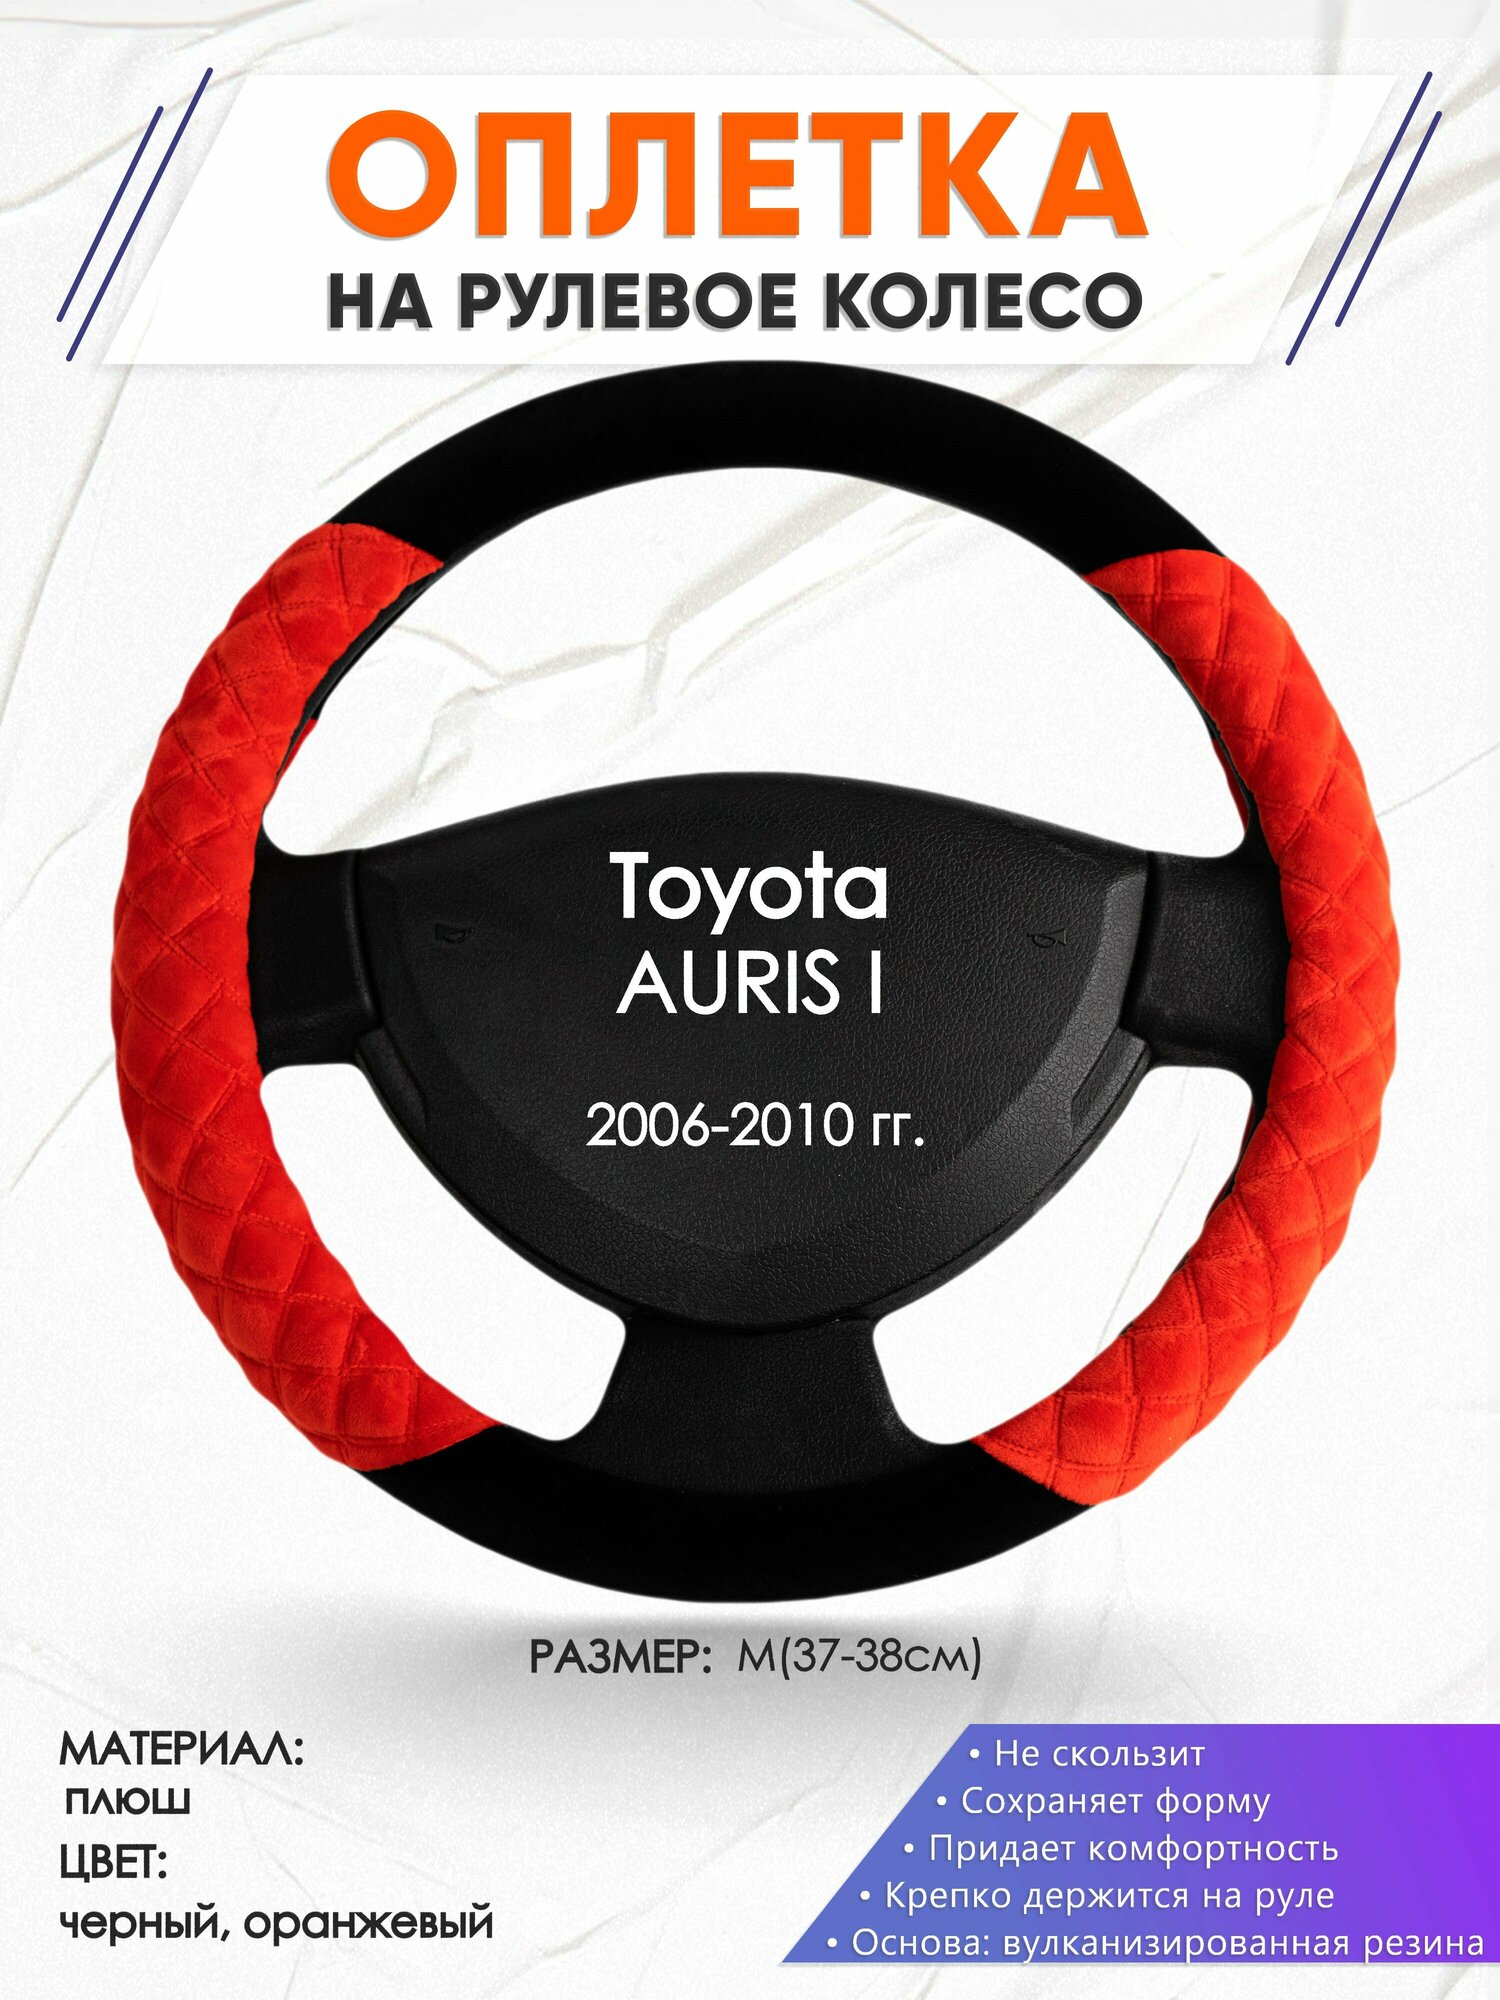 Оплетка наруль для Toyota AURIS I(Тойота Аурис) 2006-2010 годов выпуска, размер M(37-38см), Замша 37